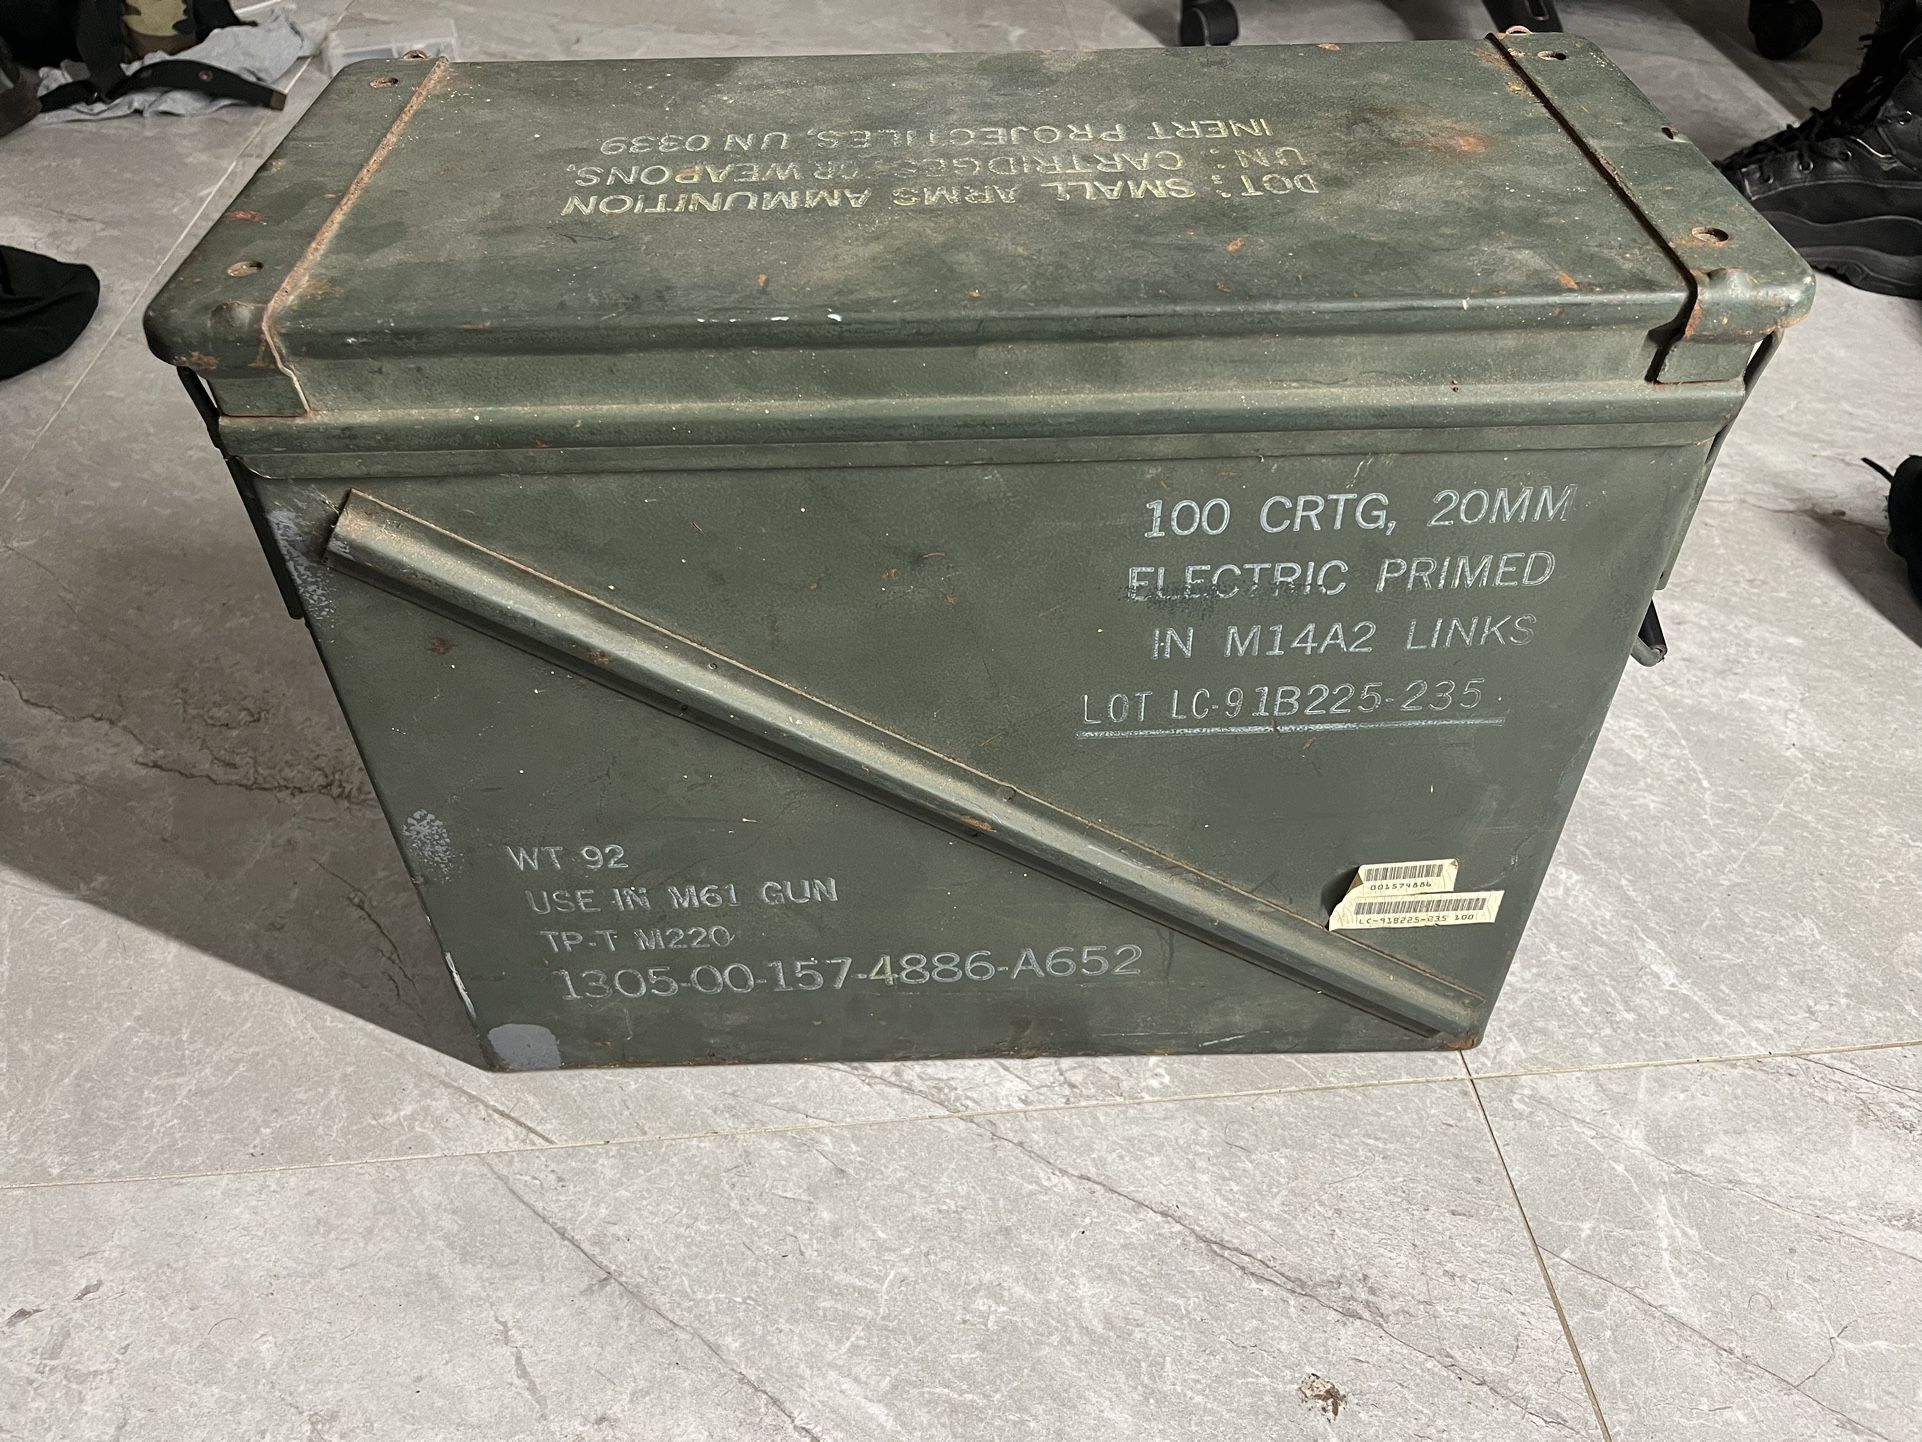 Authentic Vietnam War Ammo Crate